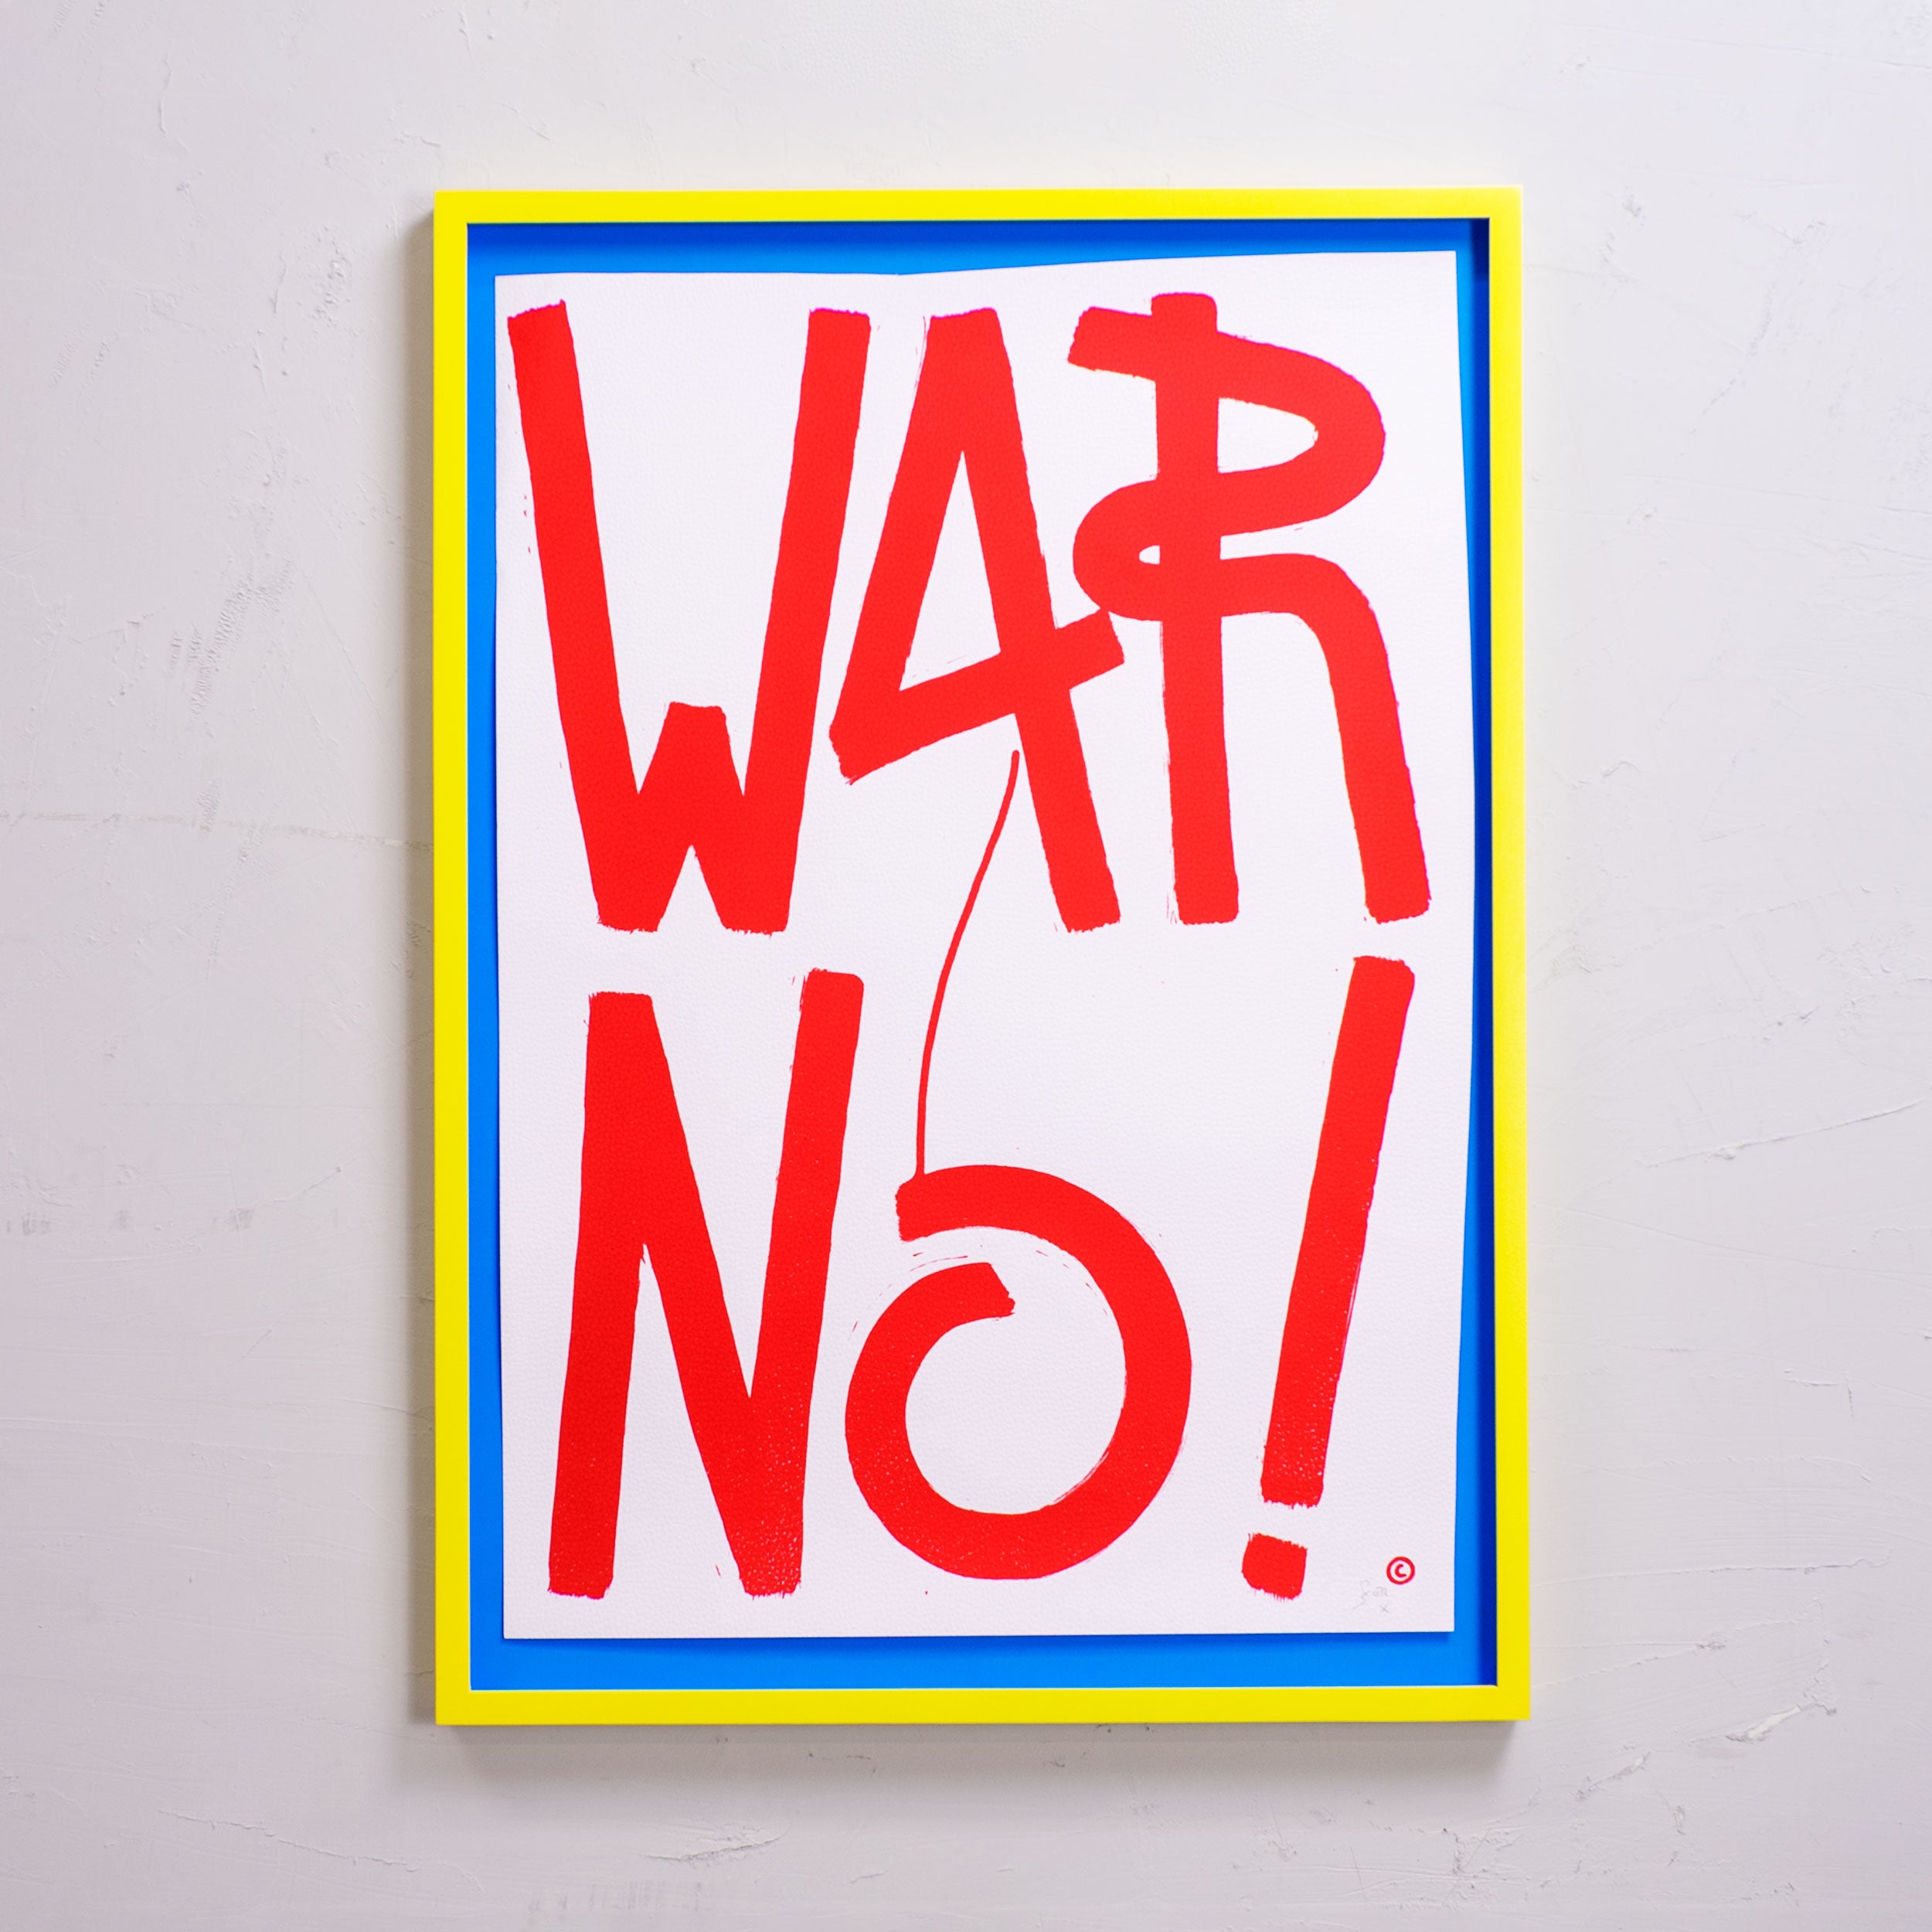 »WAR No!«